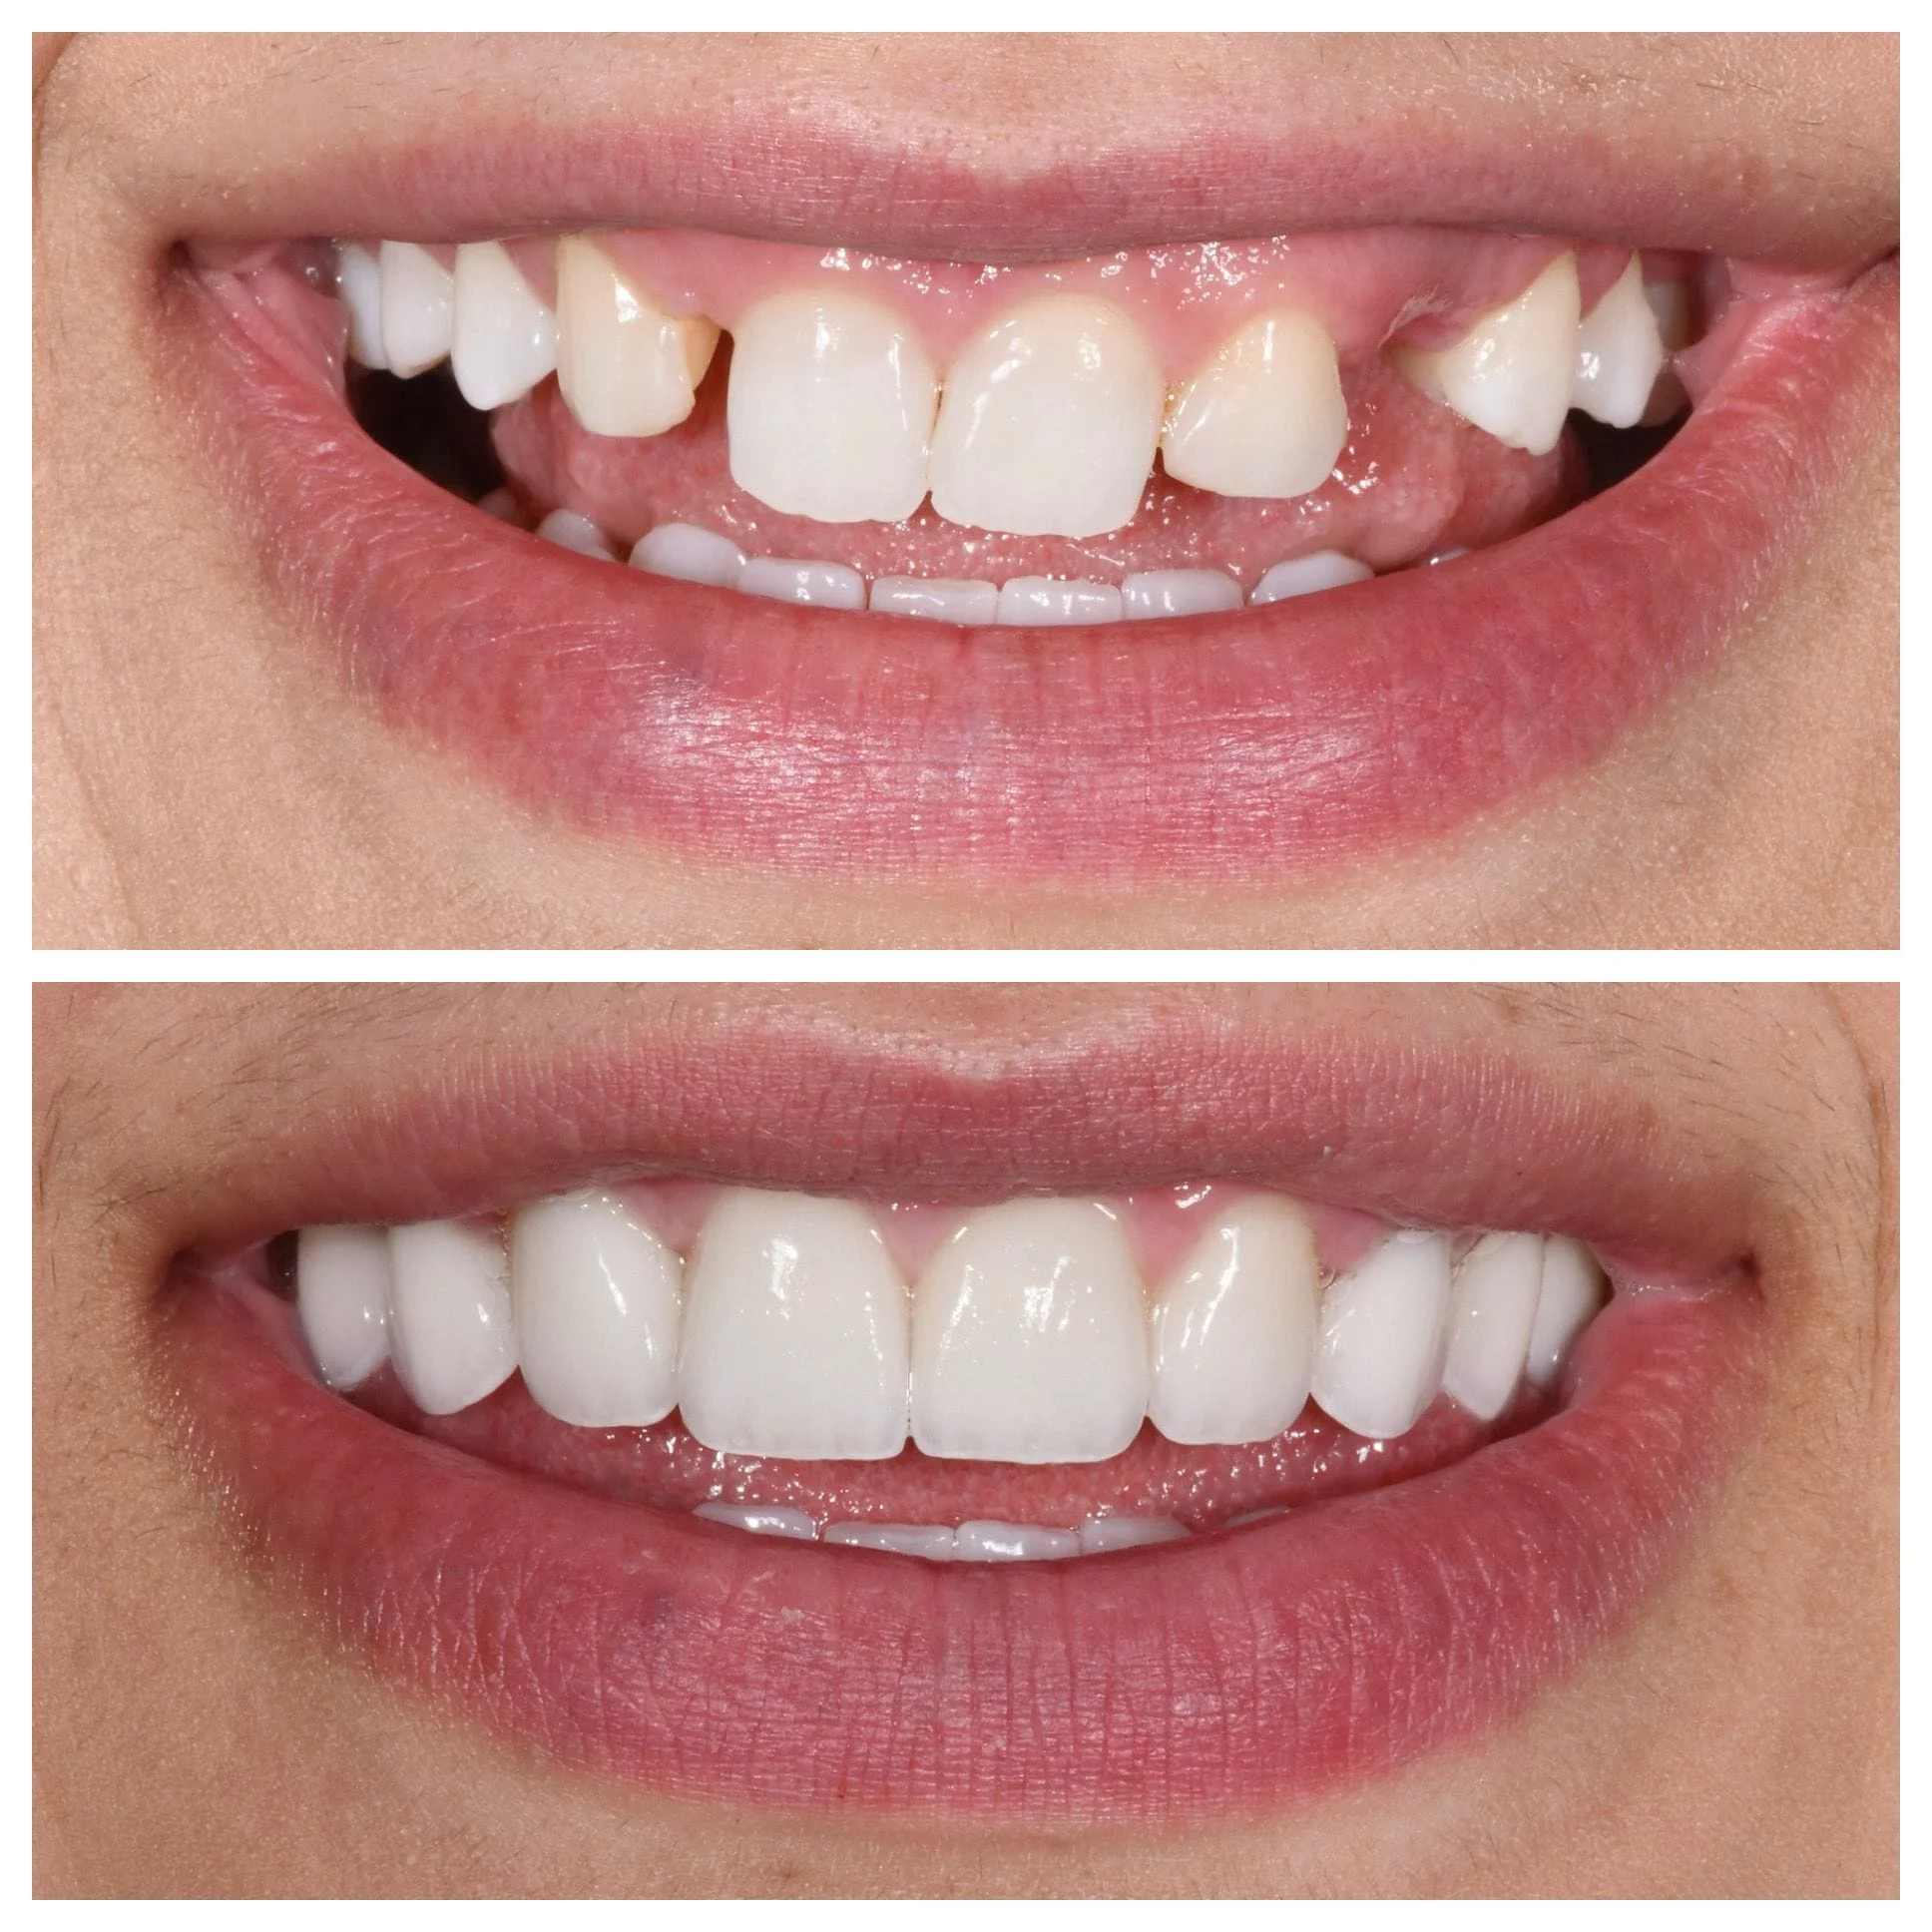 Veneers and implants to replace missing teeth